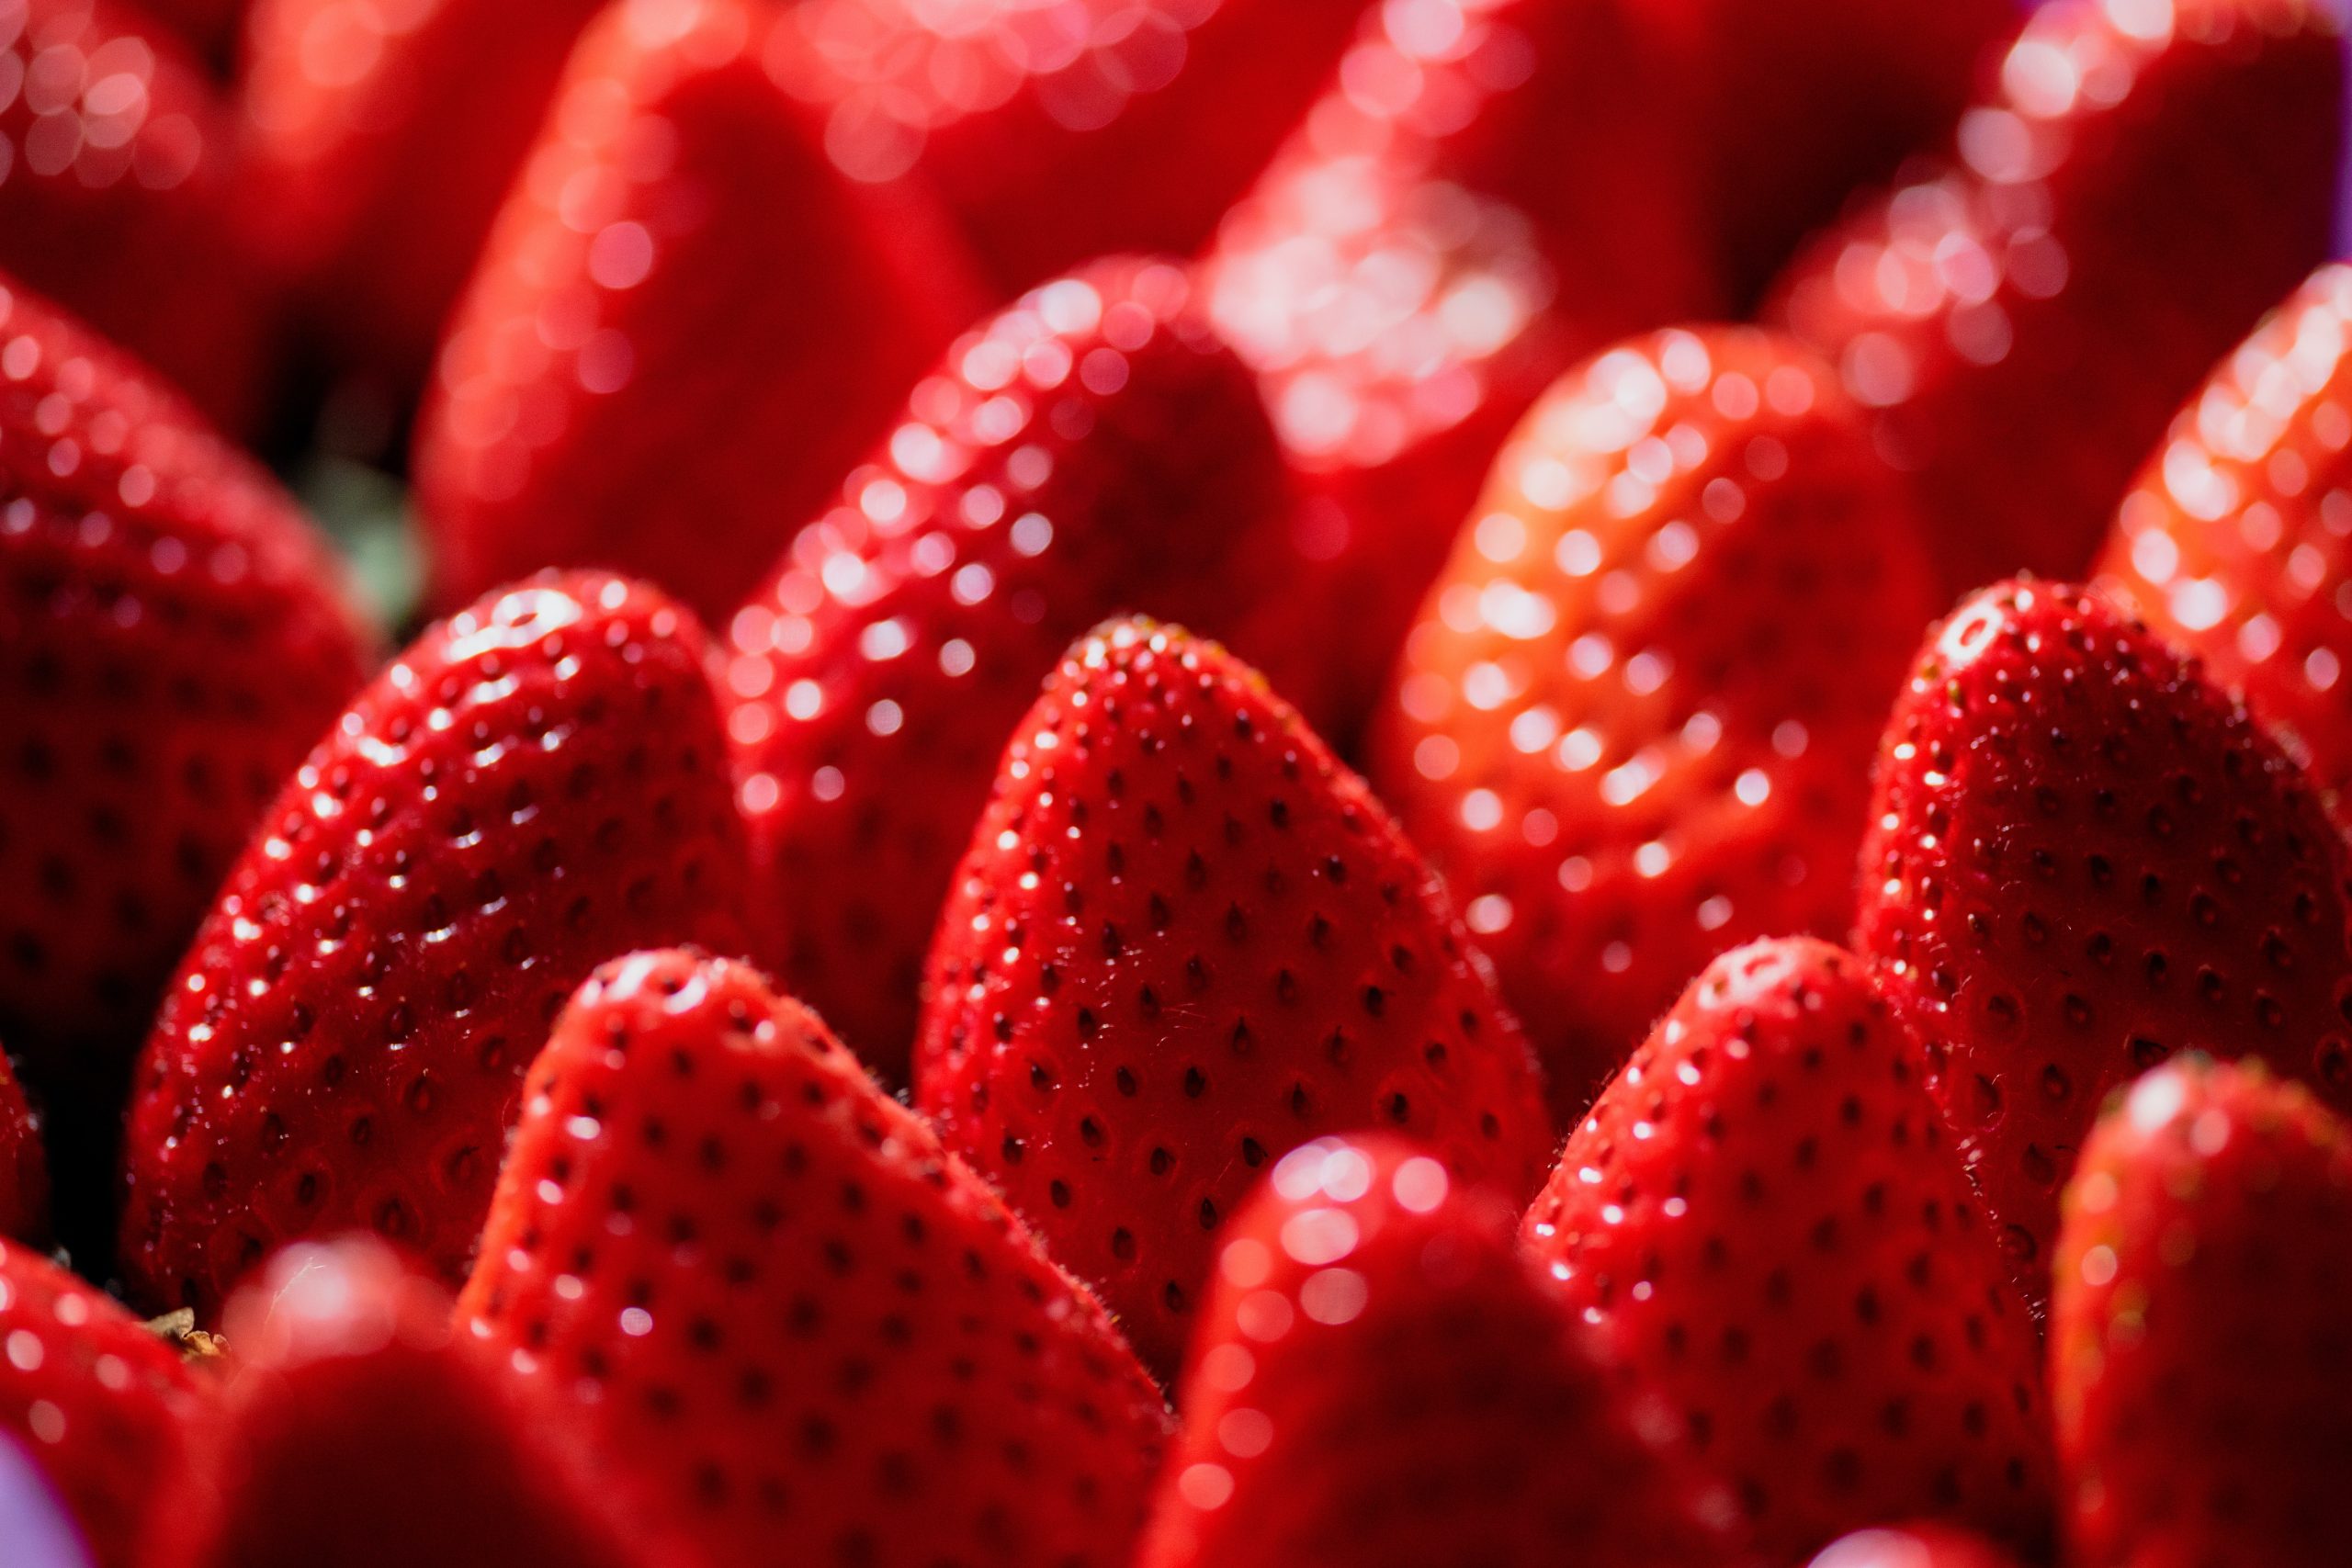 Hechizos de amor con frutos rojos